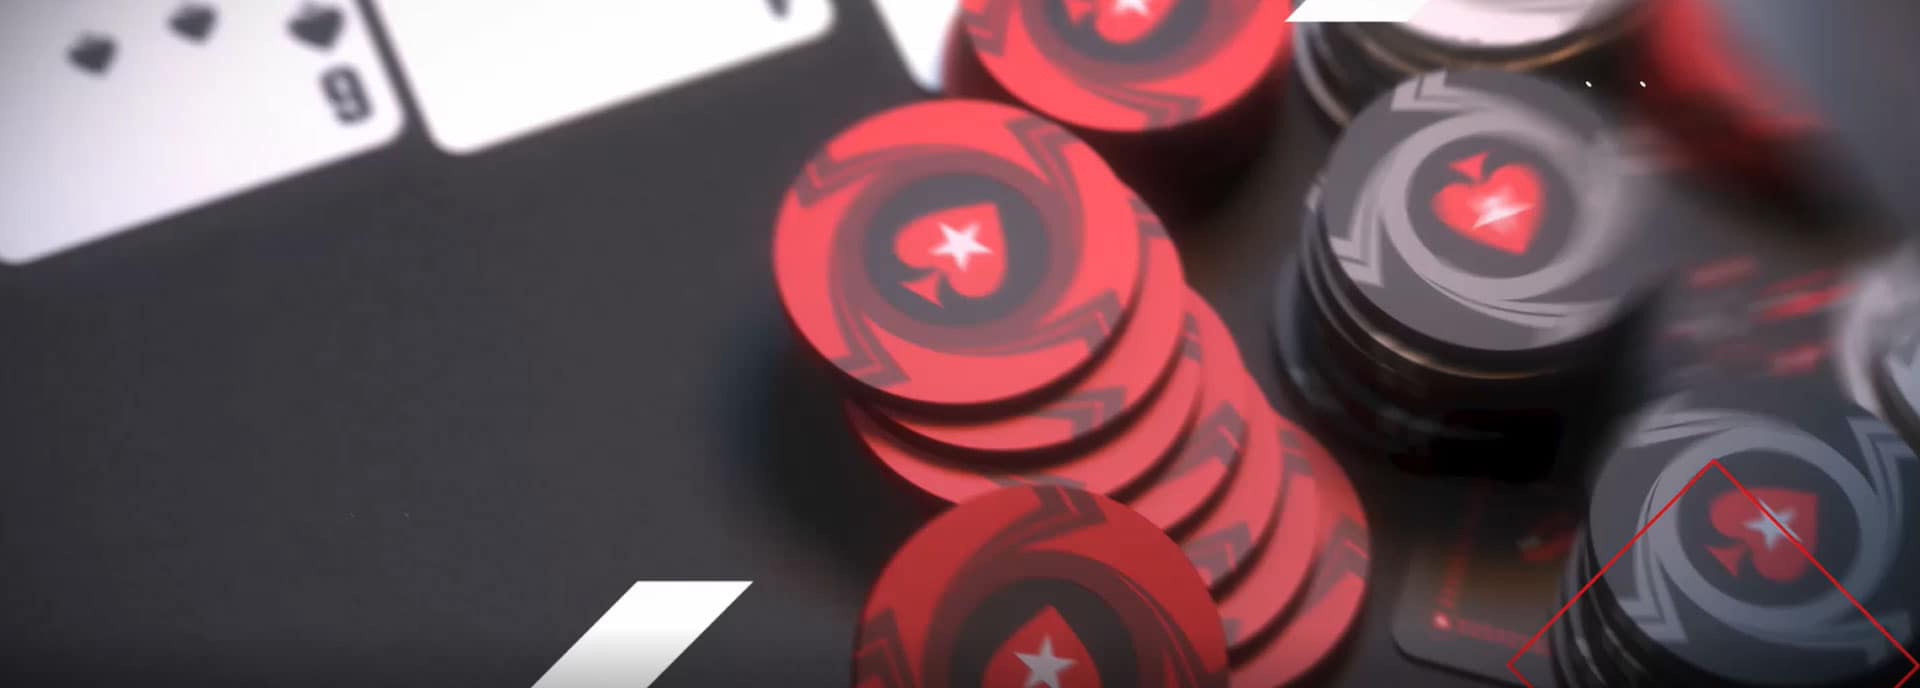 Покер старс тим онлайн играть карты дурака бесплатно на раздевание